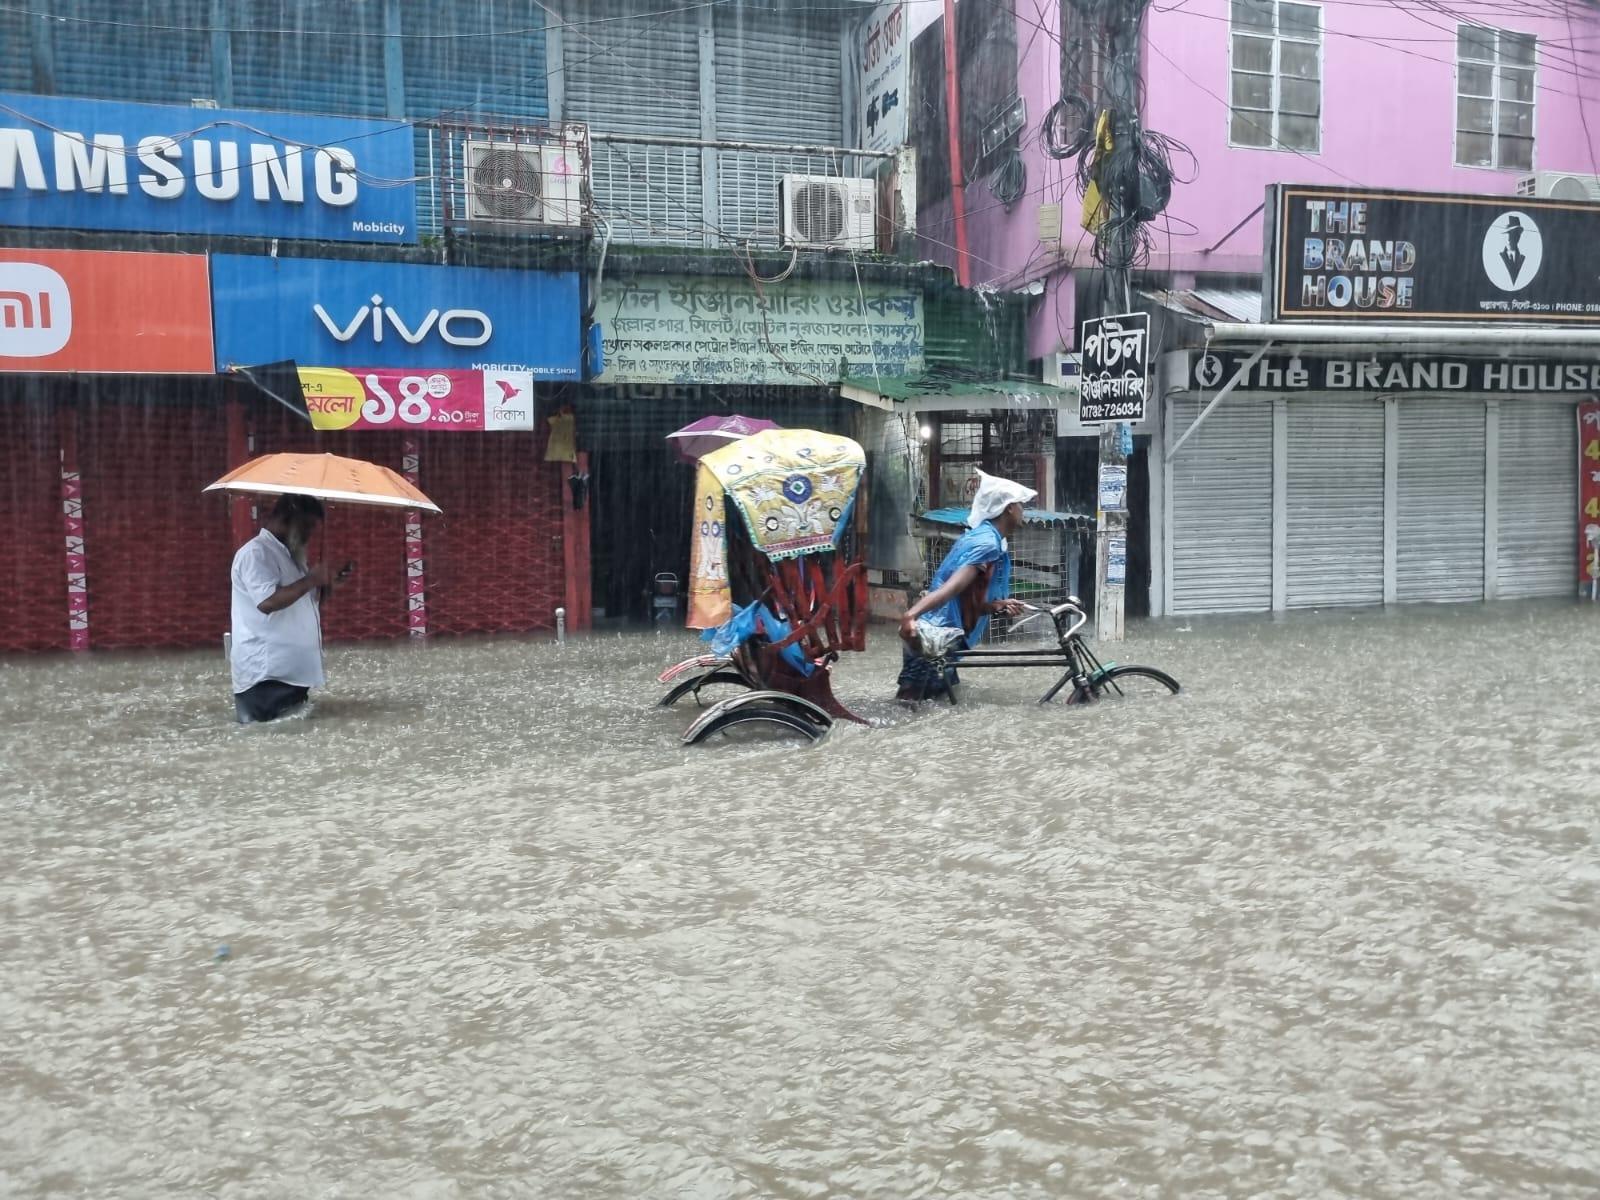 Ein Mann zieht seine Rikscha im strömenden Regen durch eine überflutete Strasse mit geschlossenen Geschäftern.  Hinter ihm geht ein Mann mit Regenschirm. Das Wasser steht ihnen Hüfthoch.